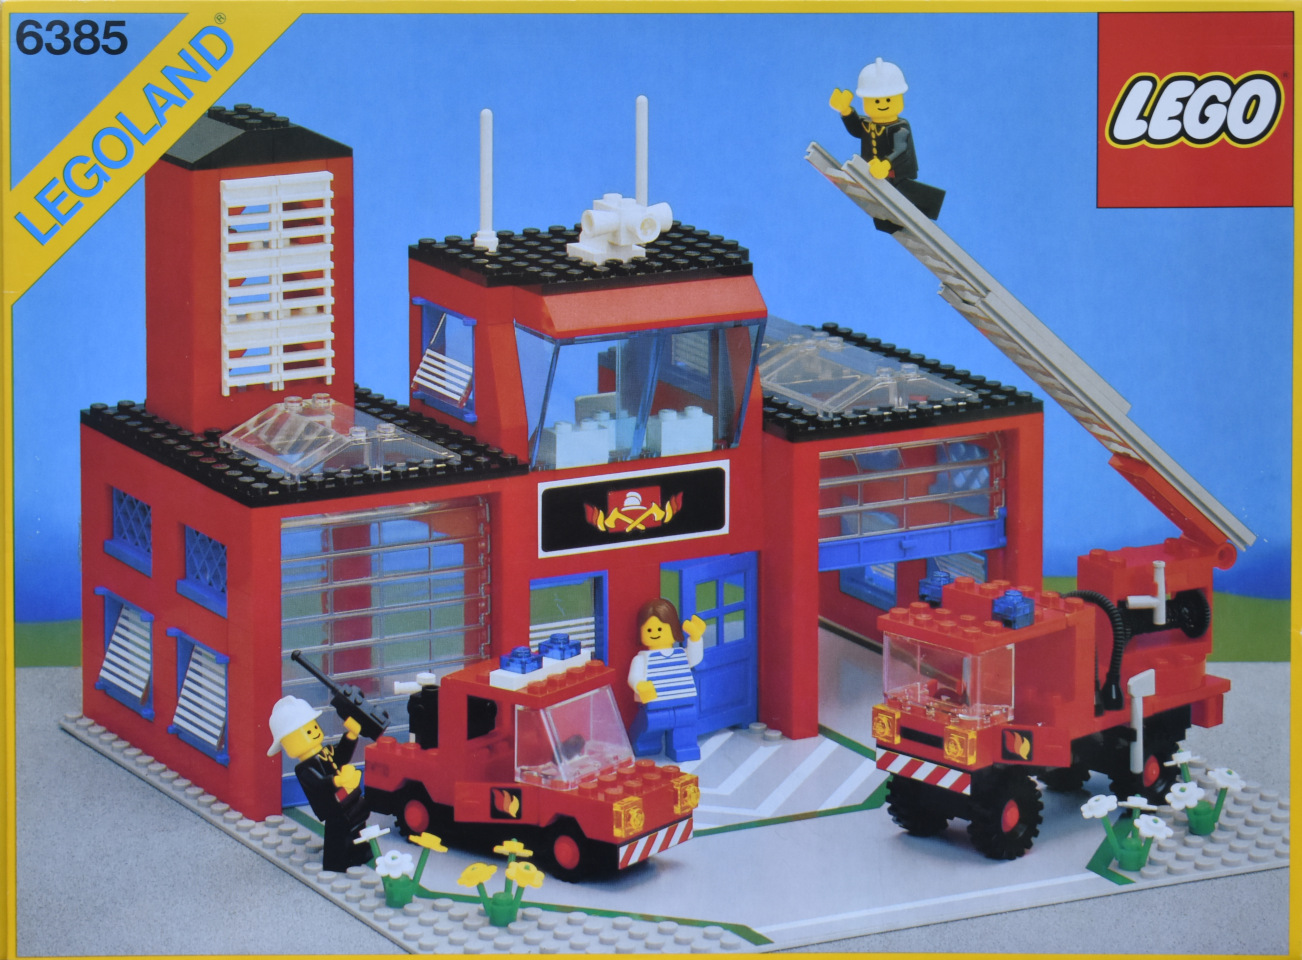 6385: Fire House-I